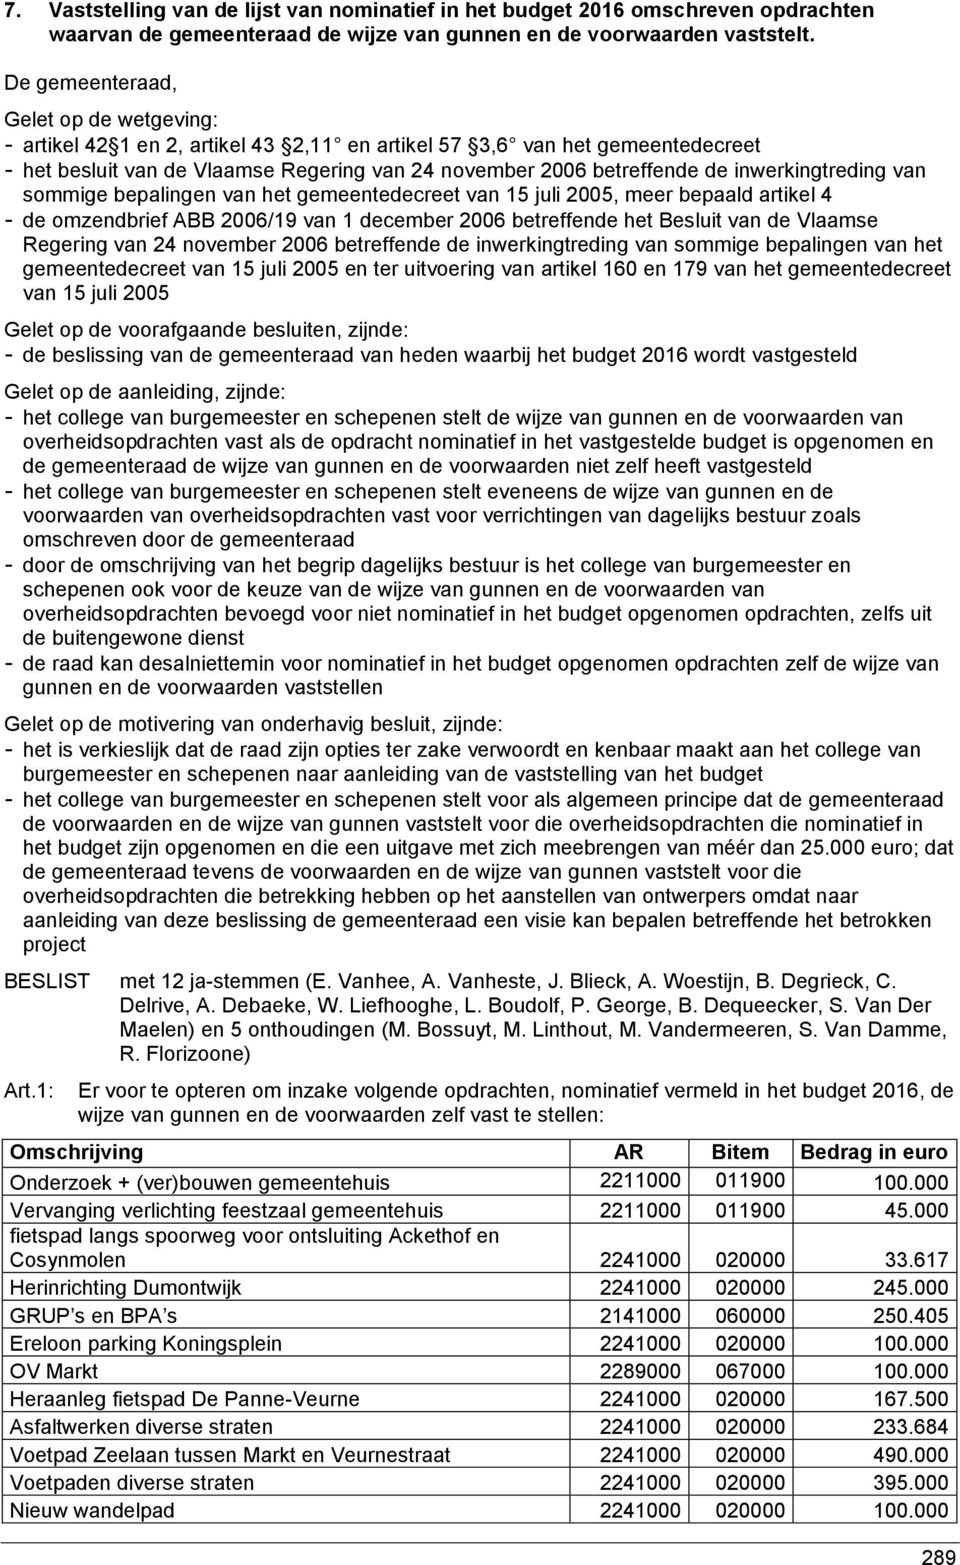 sommige bepalingen van het gemeentedecreet van 15 juli 2005, meer bepaald artikel 4 - de omzendbrief ABB 2006/19 van 1 december 2006 betreffende het Besluit van de Vlaamse Regering van 24 november